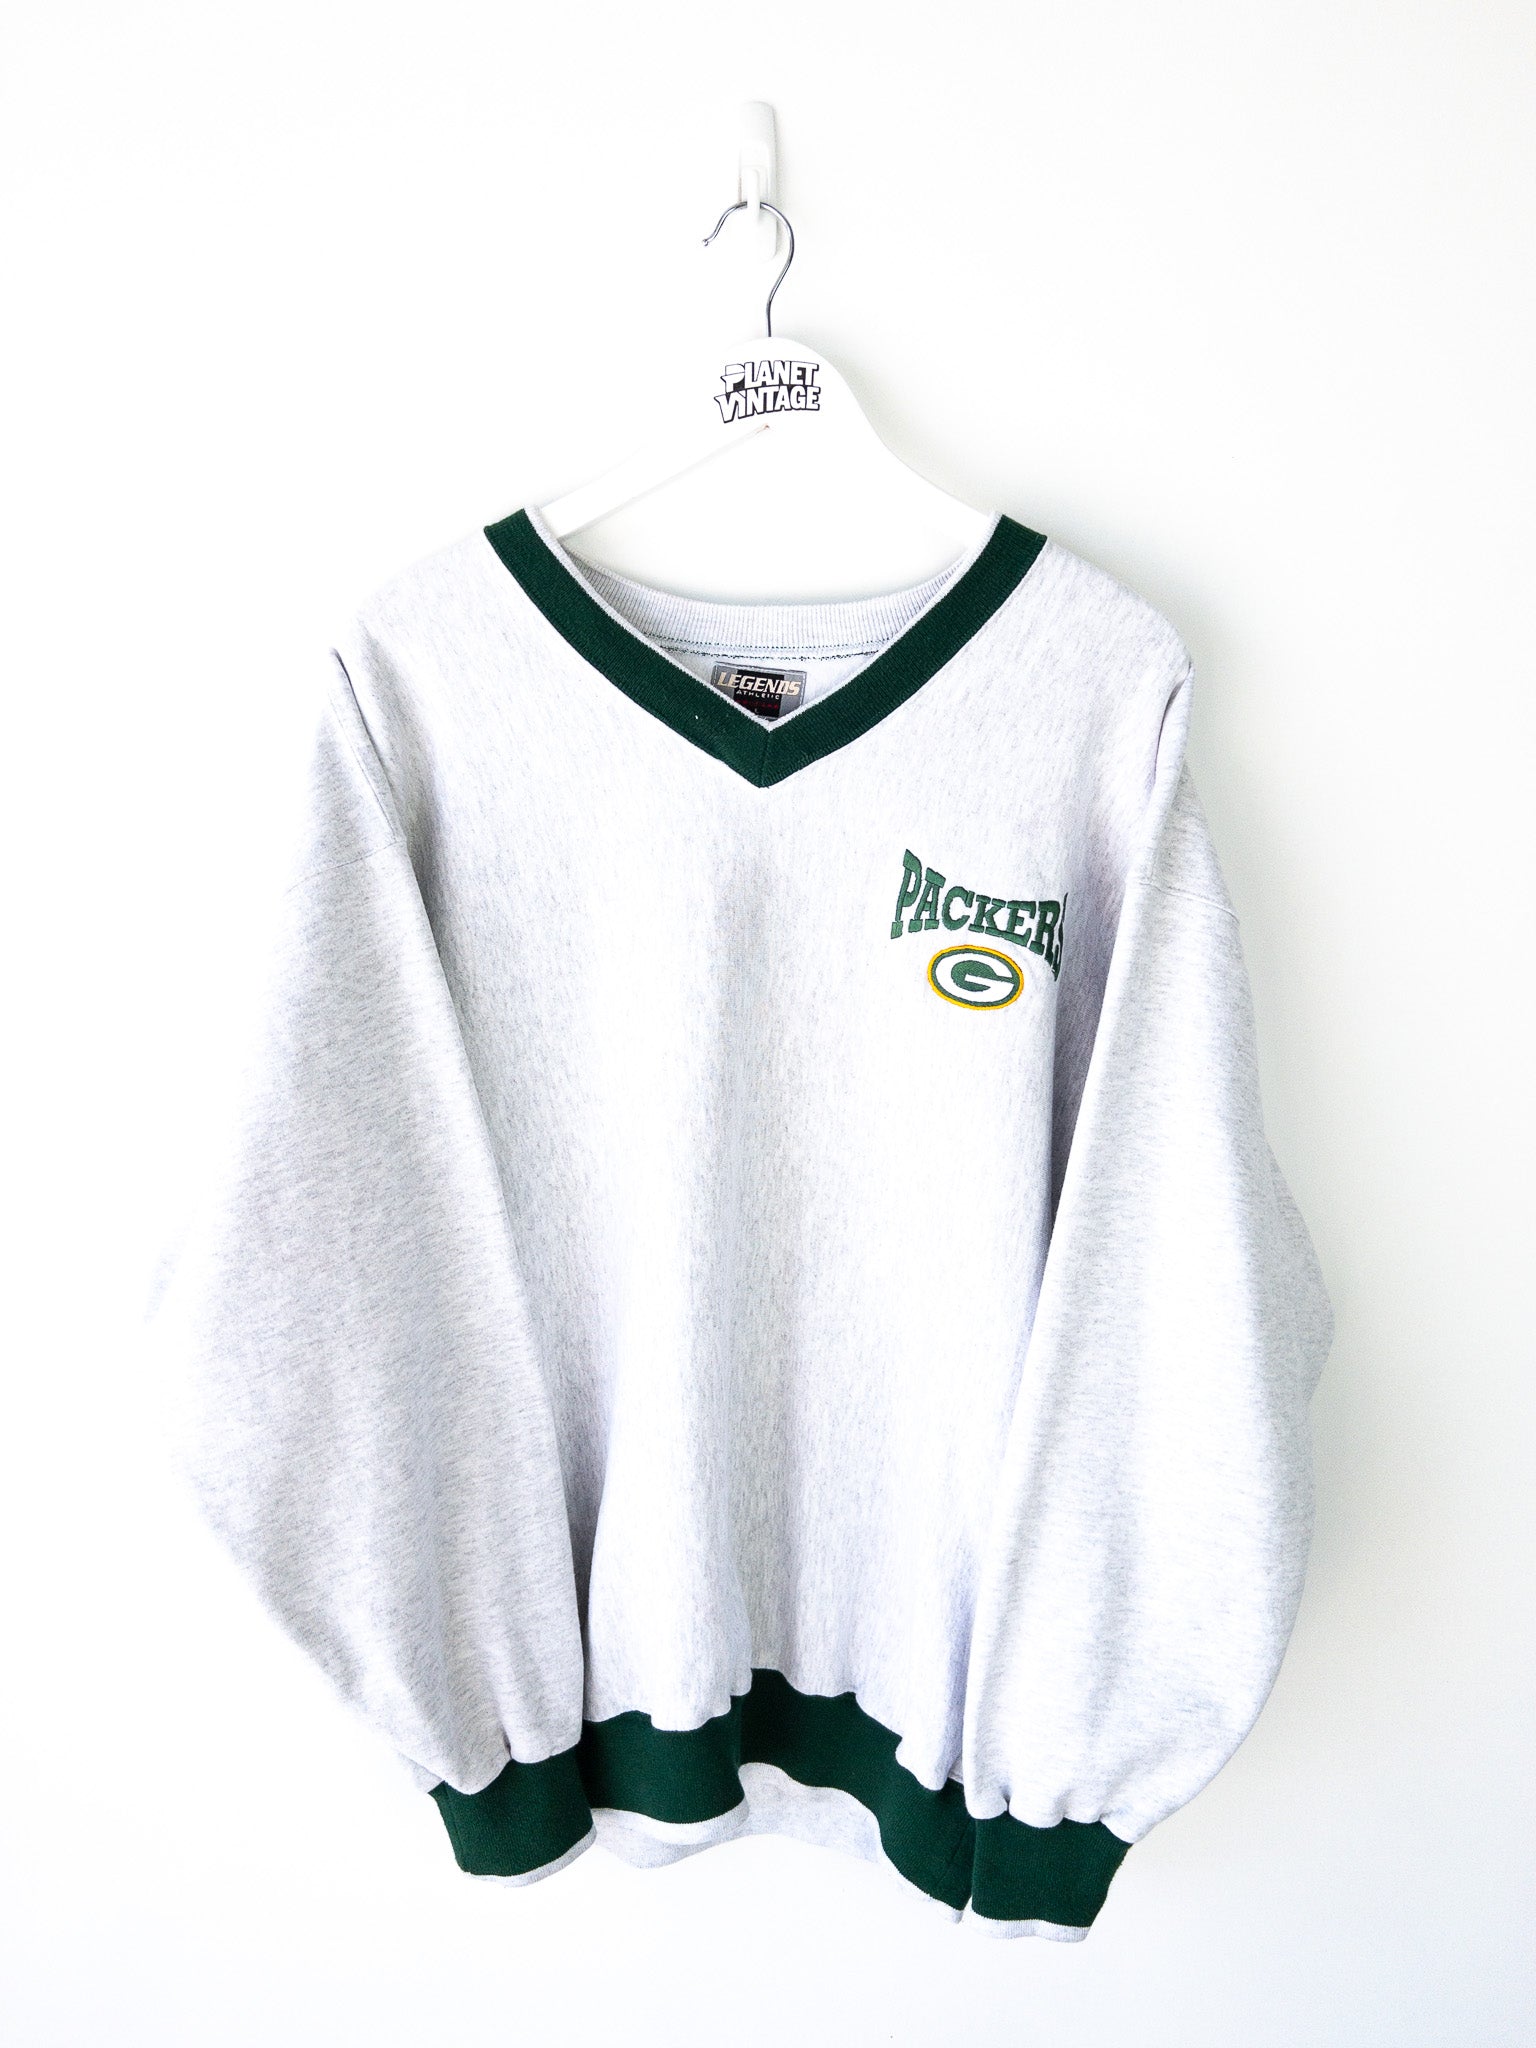 Vintage Green Bay Packers Sweatshirt (L)